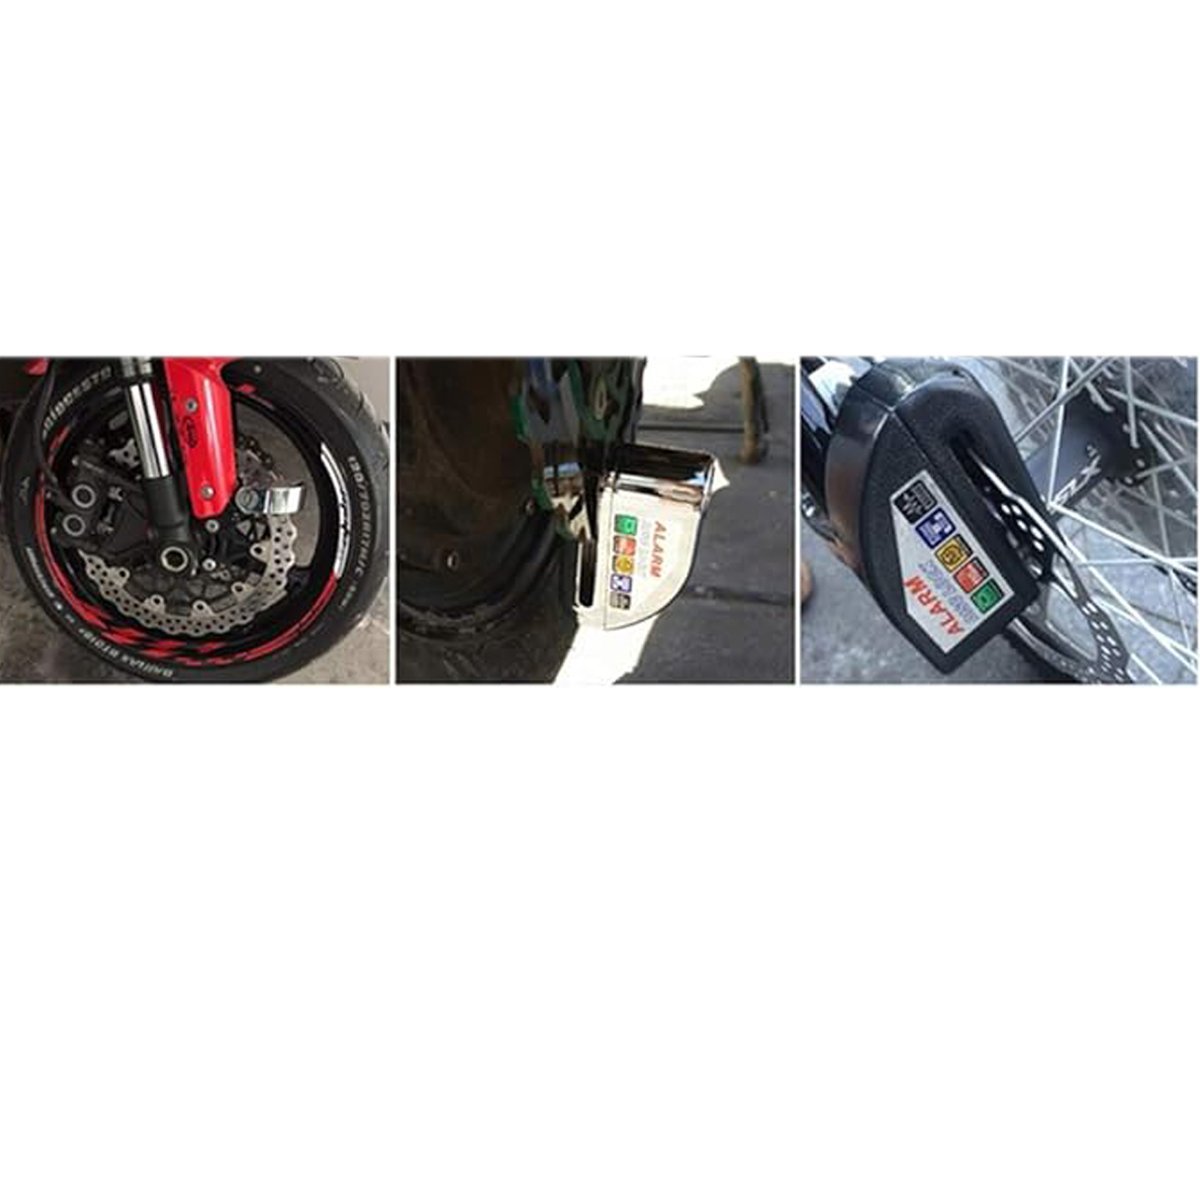 Trava de Disco Cadeado Moto Freio Sensor Alarme Sonoro Anti Roubo Furto Motocicleta Bicicleta Bike P - 6